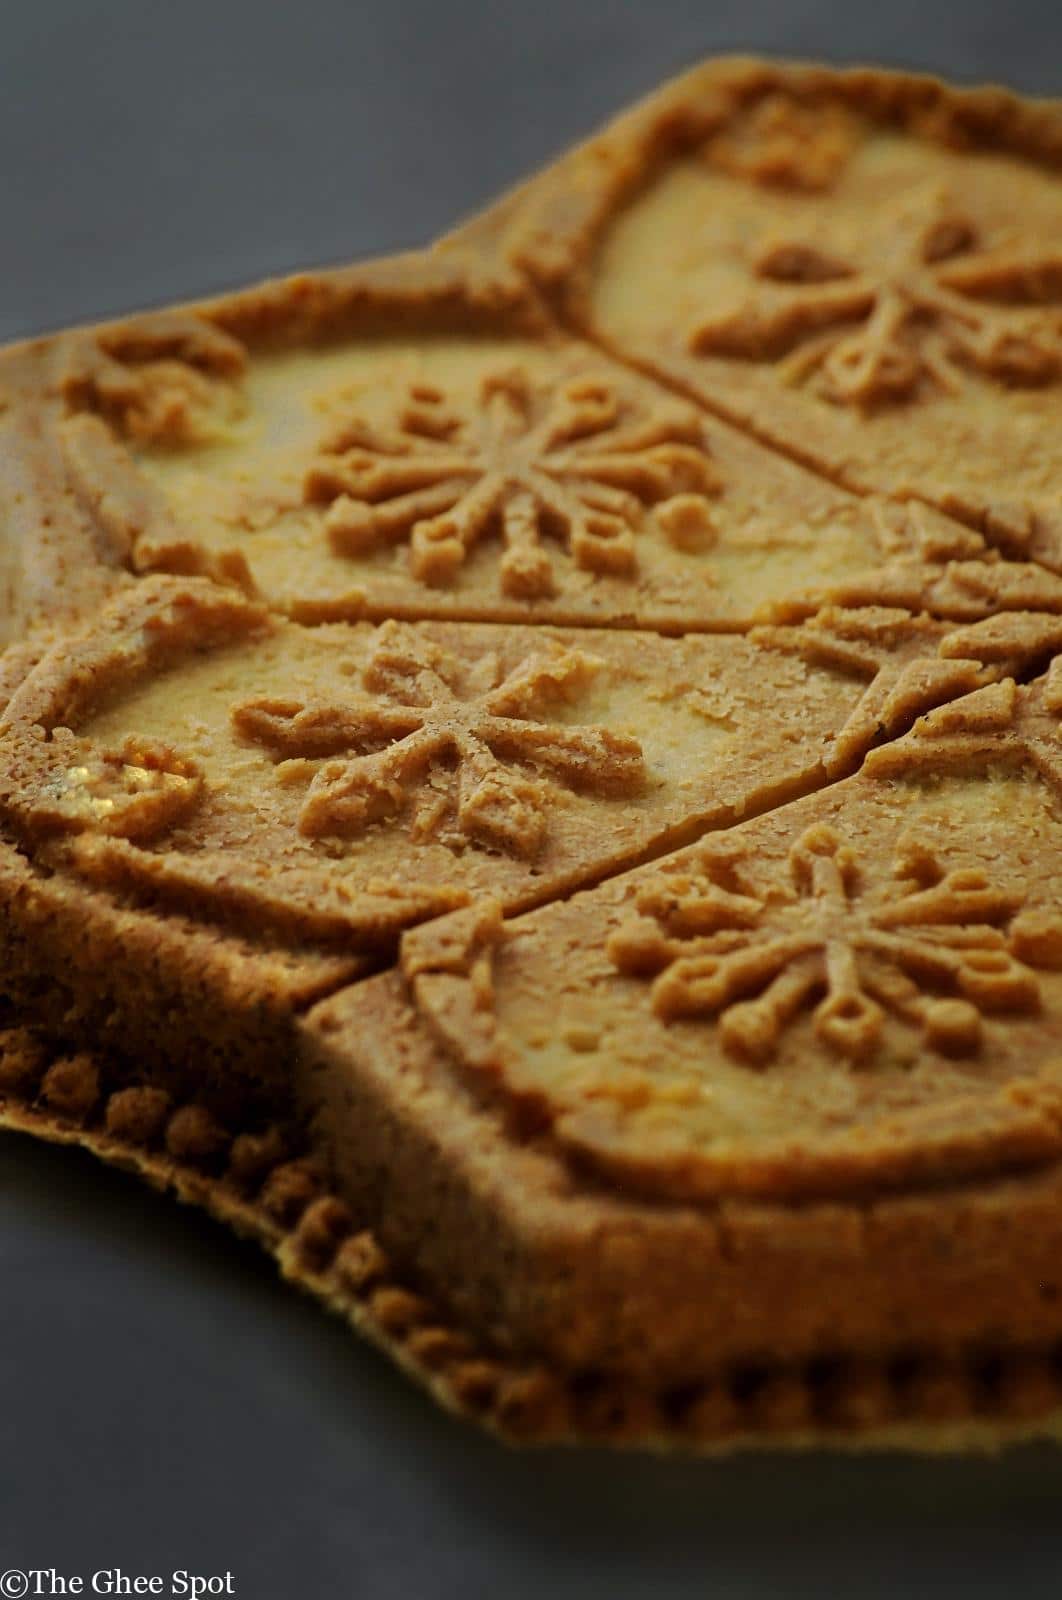 Brown Sugar & Cardamom Stamped Shortbread Cookies - Nordic Ware, Recipe